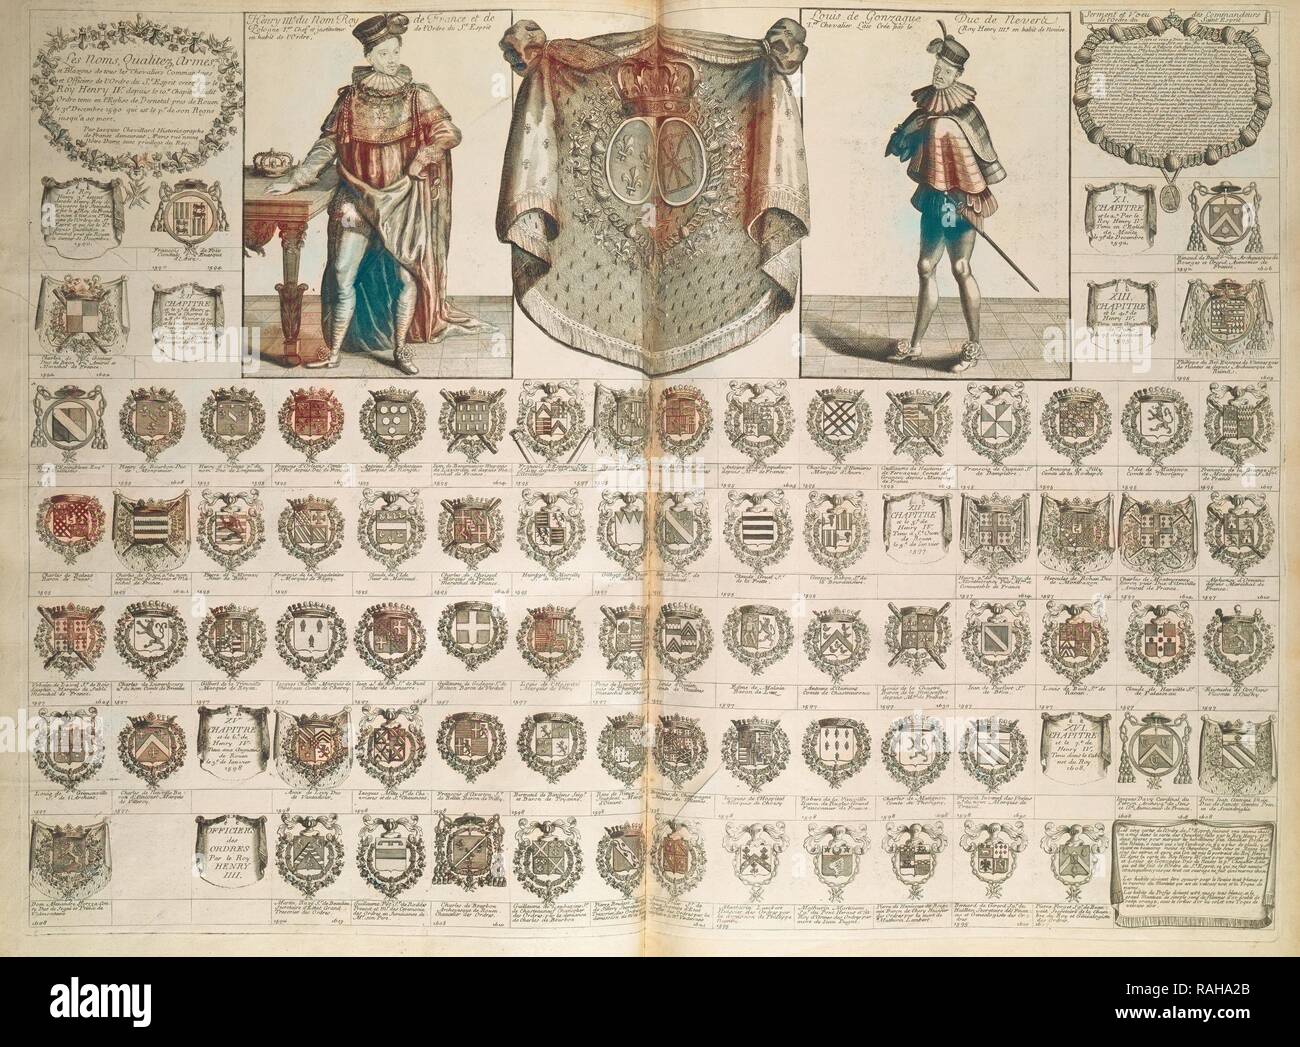 Le noms qualitéz armes et blasons, Cartes de blason, de chronologie, et d' histoire, Chevillard, J. (Jacques), 1695- reimagined Stock Photo - Alamy